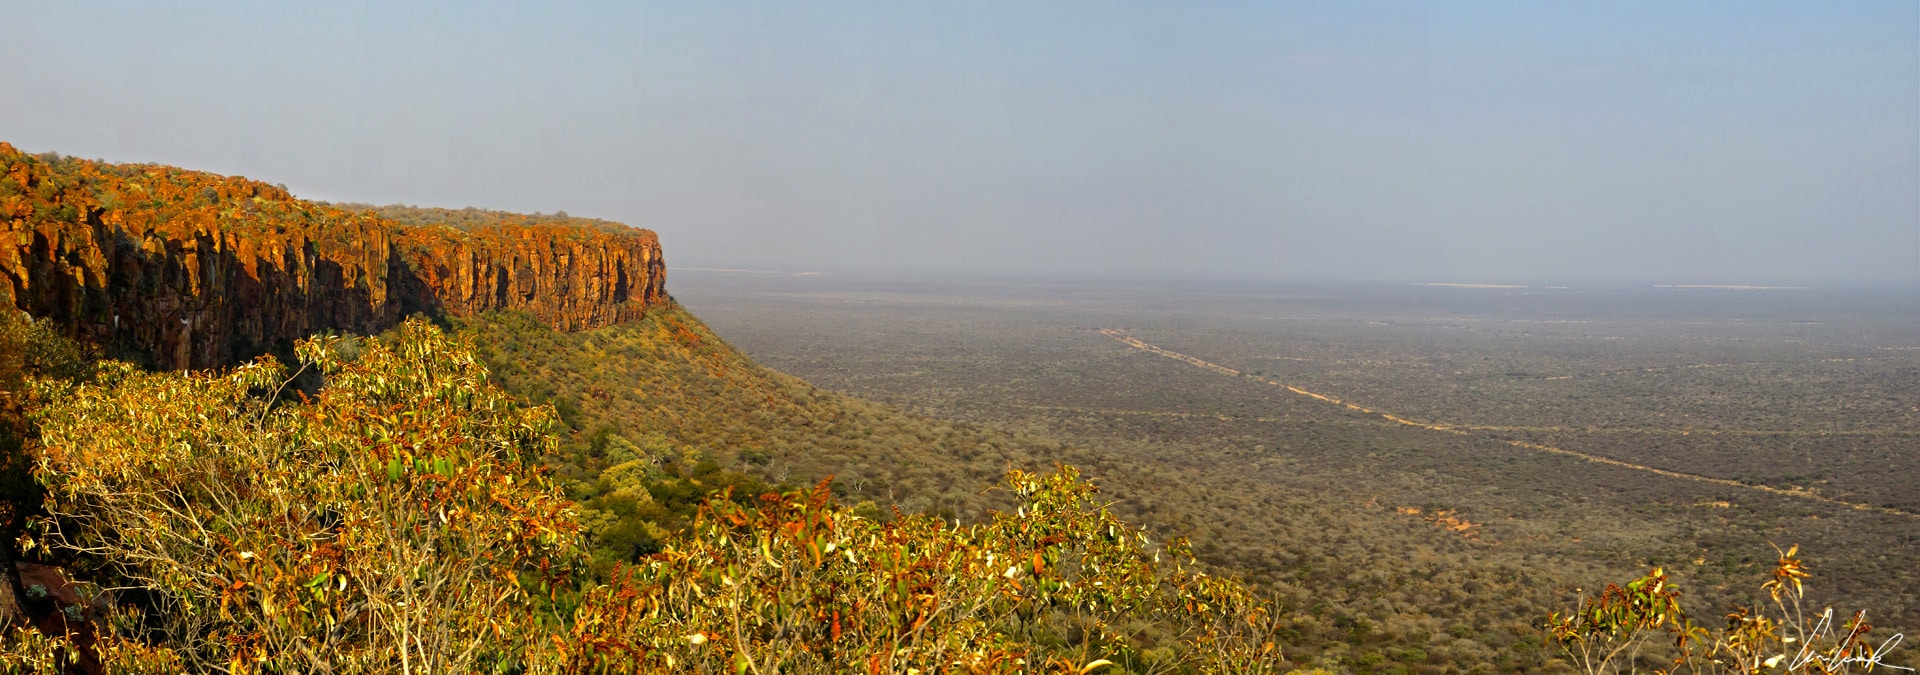 A Mountain View, au bord du plateau du Waterberg, on a une vue saisissante sur la savane infinie du Kalahari, monotone, plate